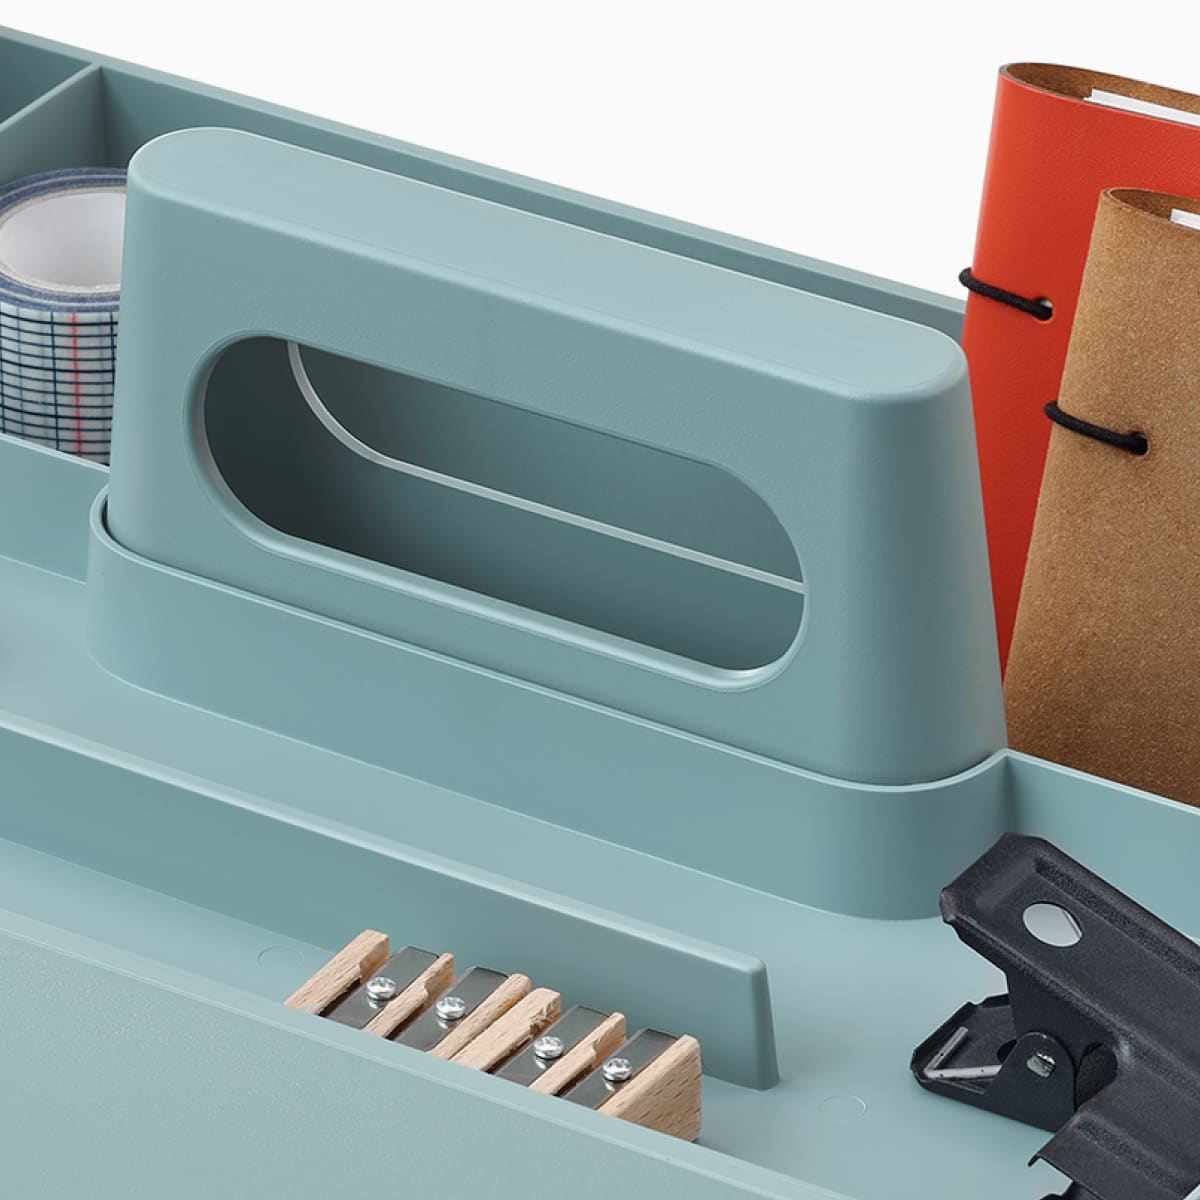 浅蓝色 OE1 工具箱，内有铅笔、记事本和其他个人物品，角度视图。